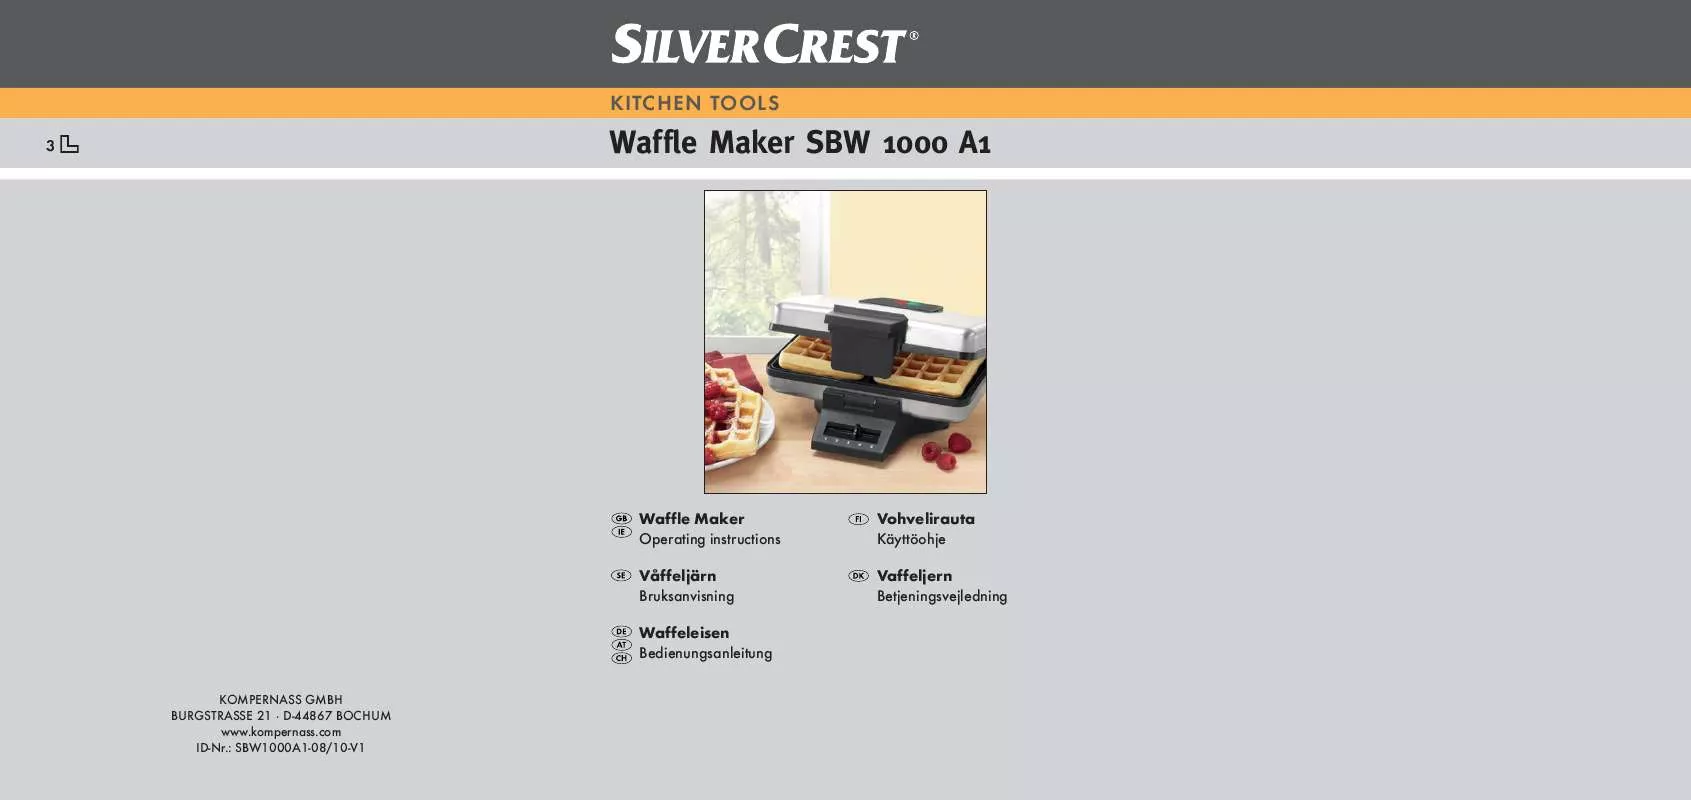 Mode d'emploi SILVERCREST SBW 1000 A1 WAFFLE MAKER